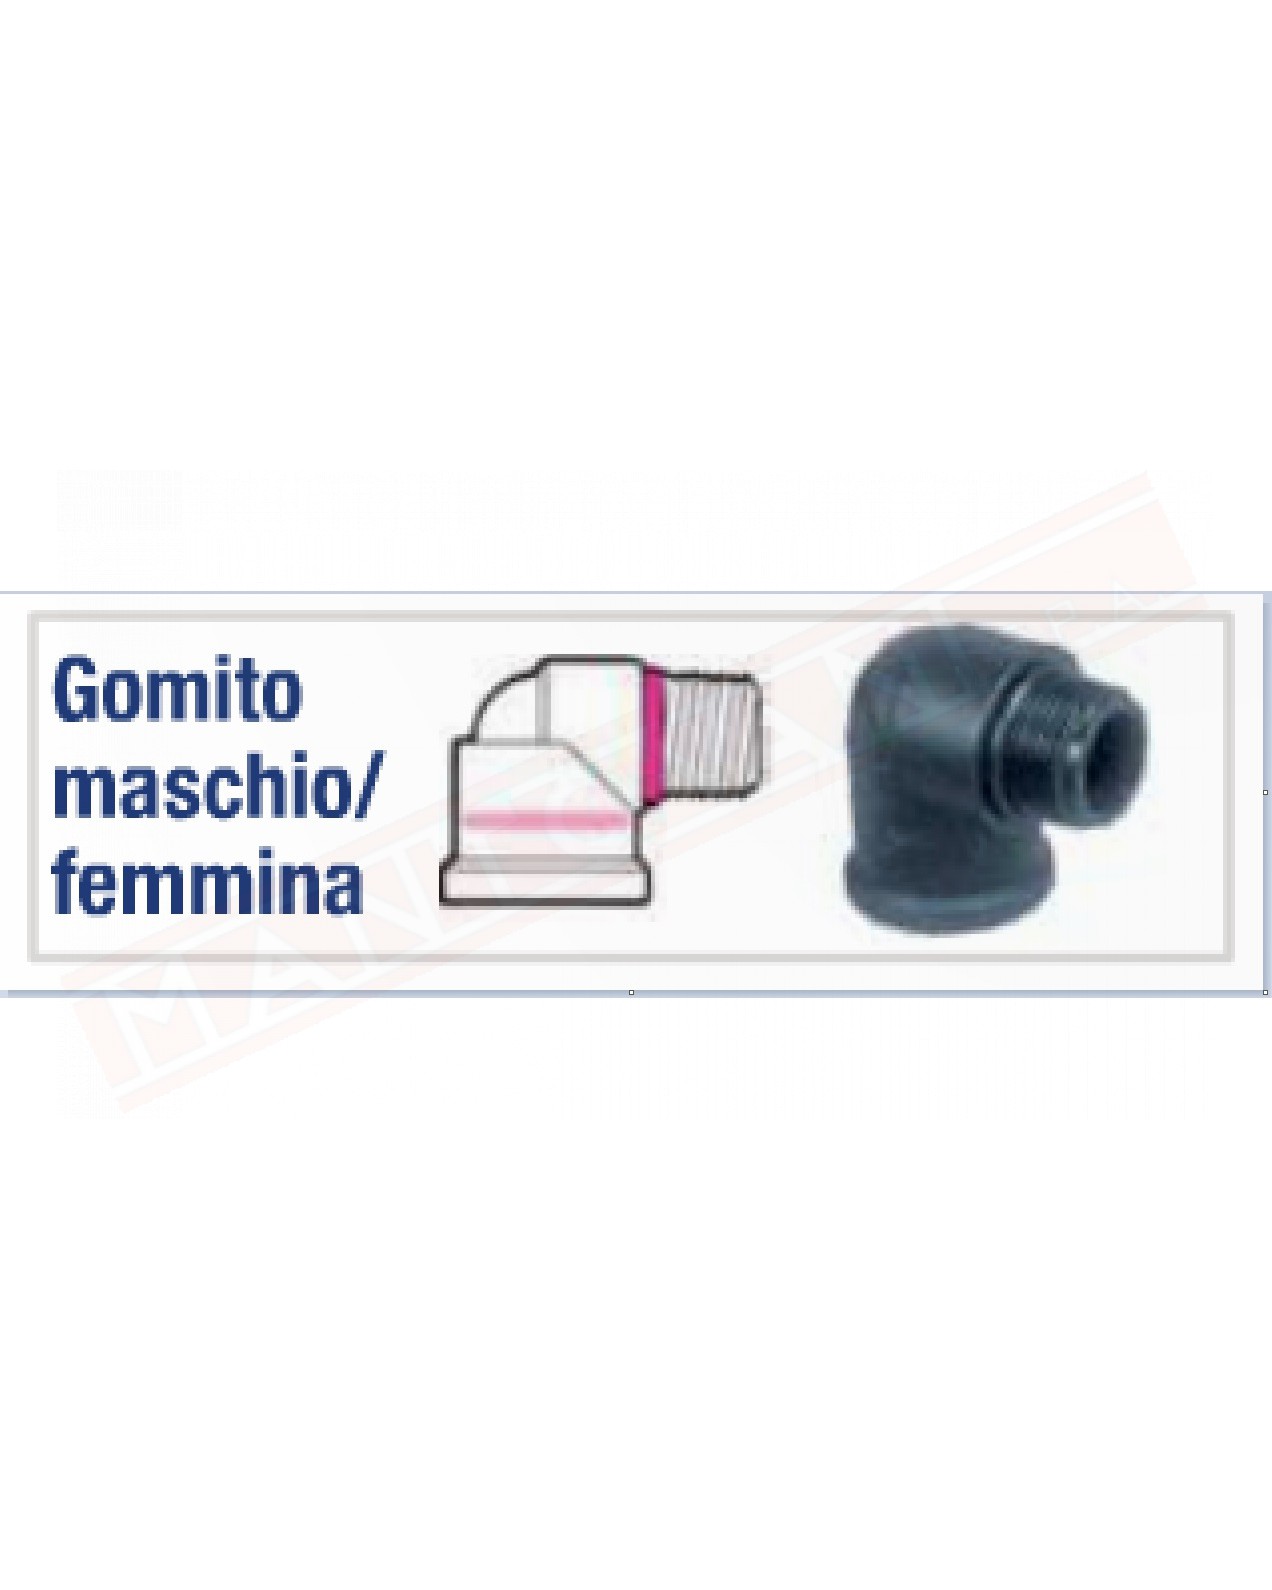 DEL TAGLIA GMF-100-G GOMITO MASCHIO FEMMMINA 1